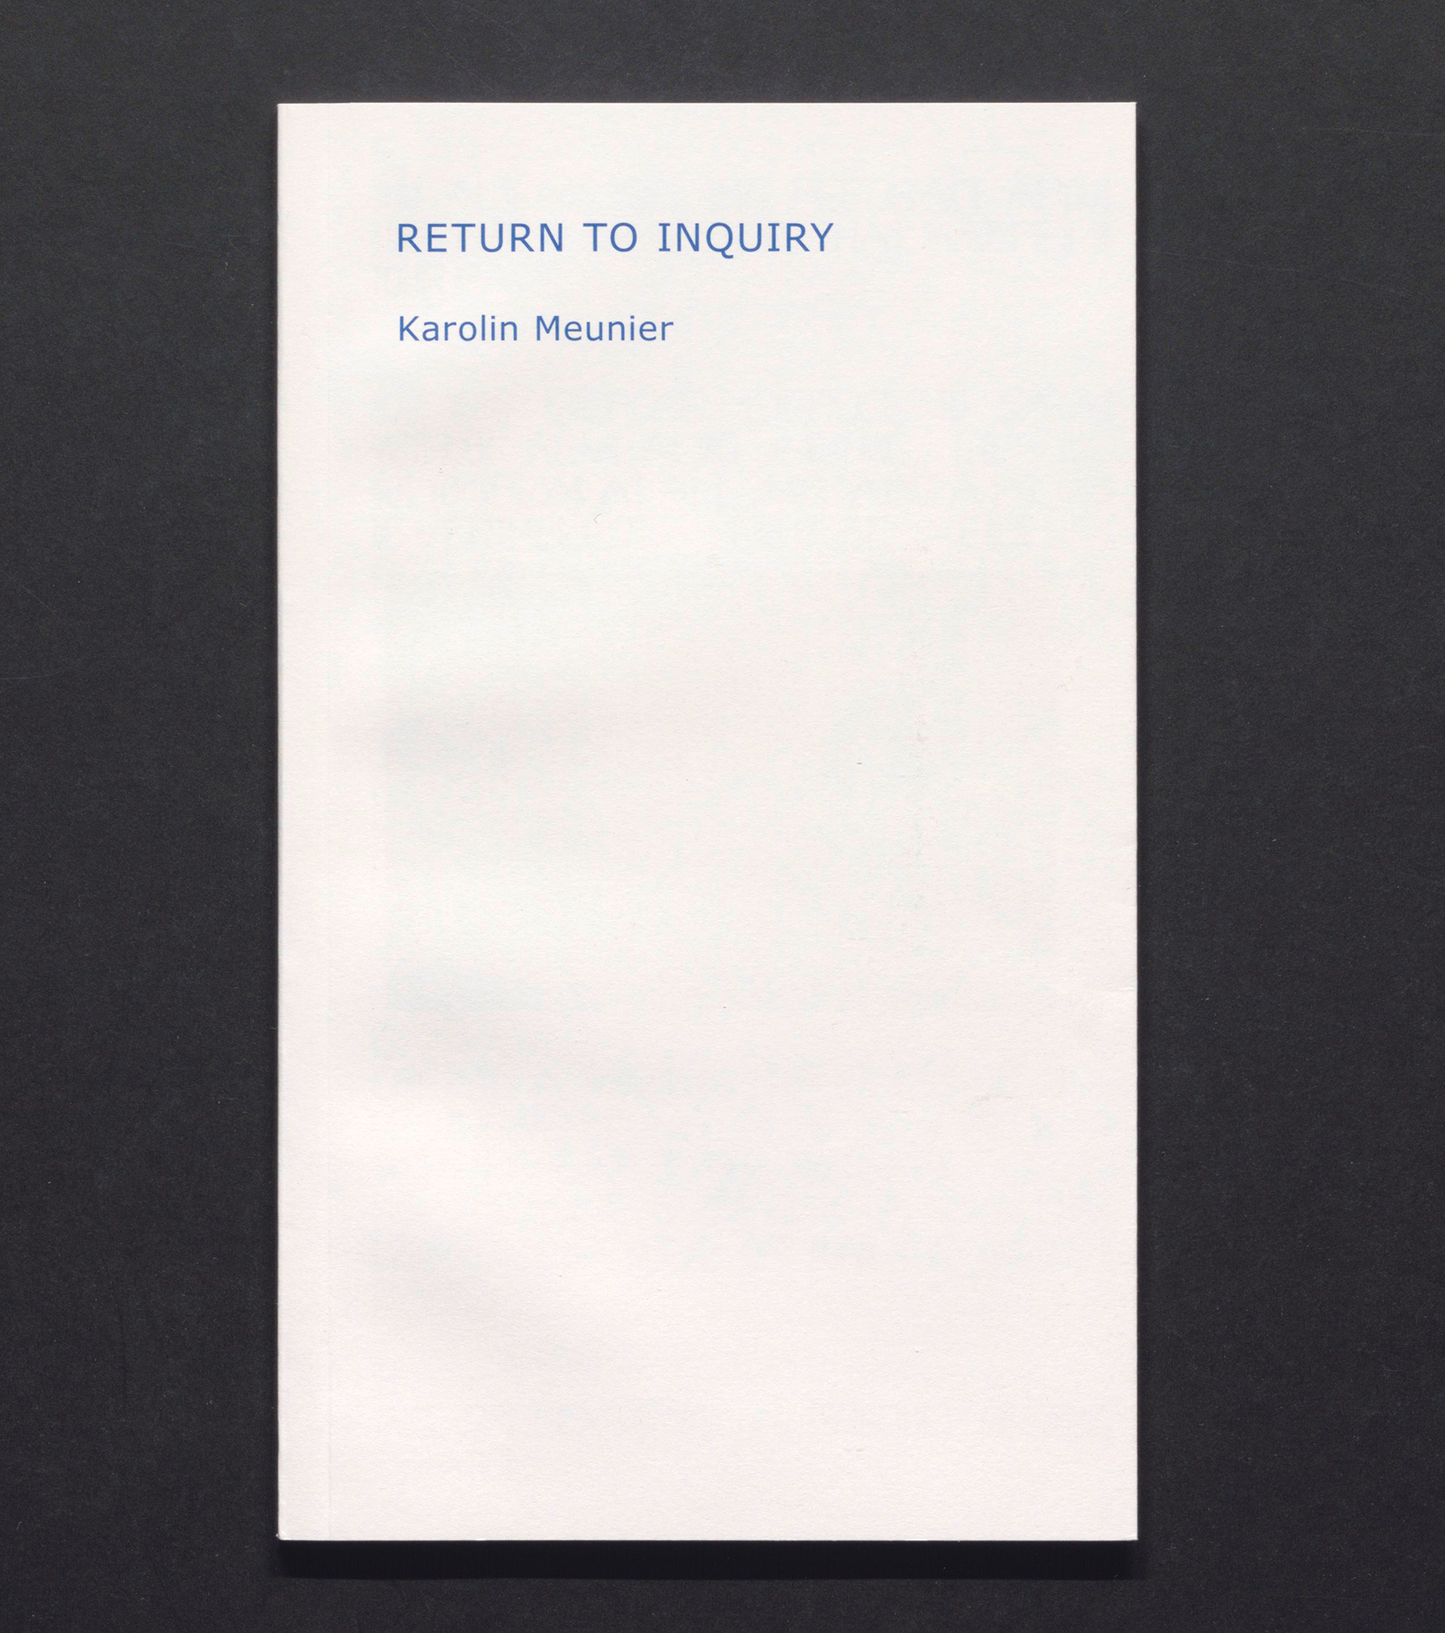 Return to Inquiry